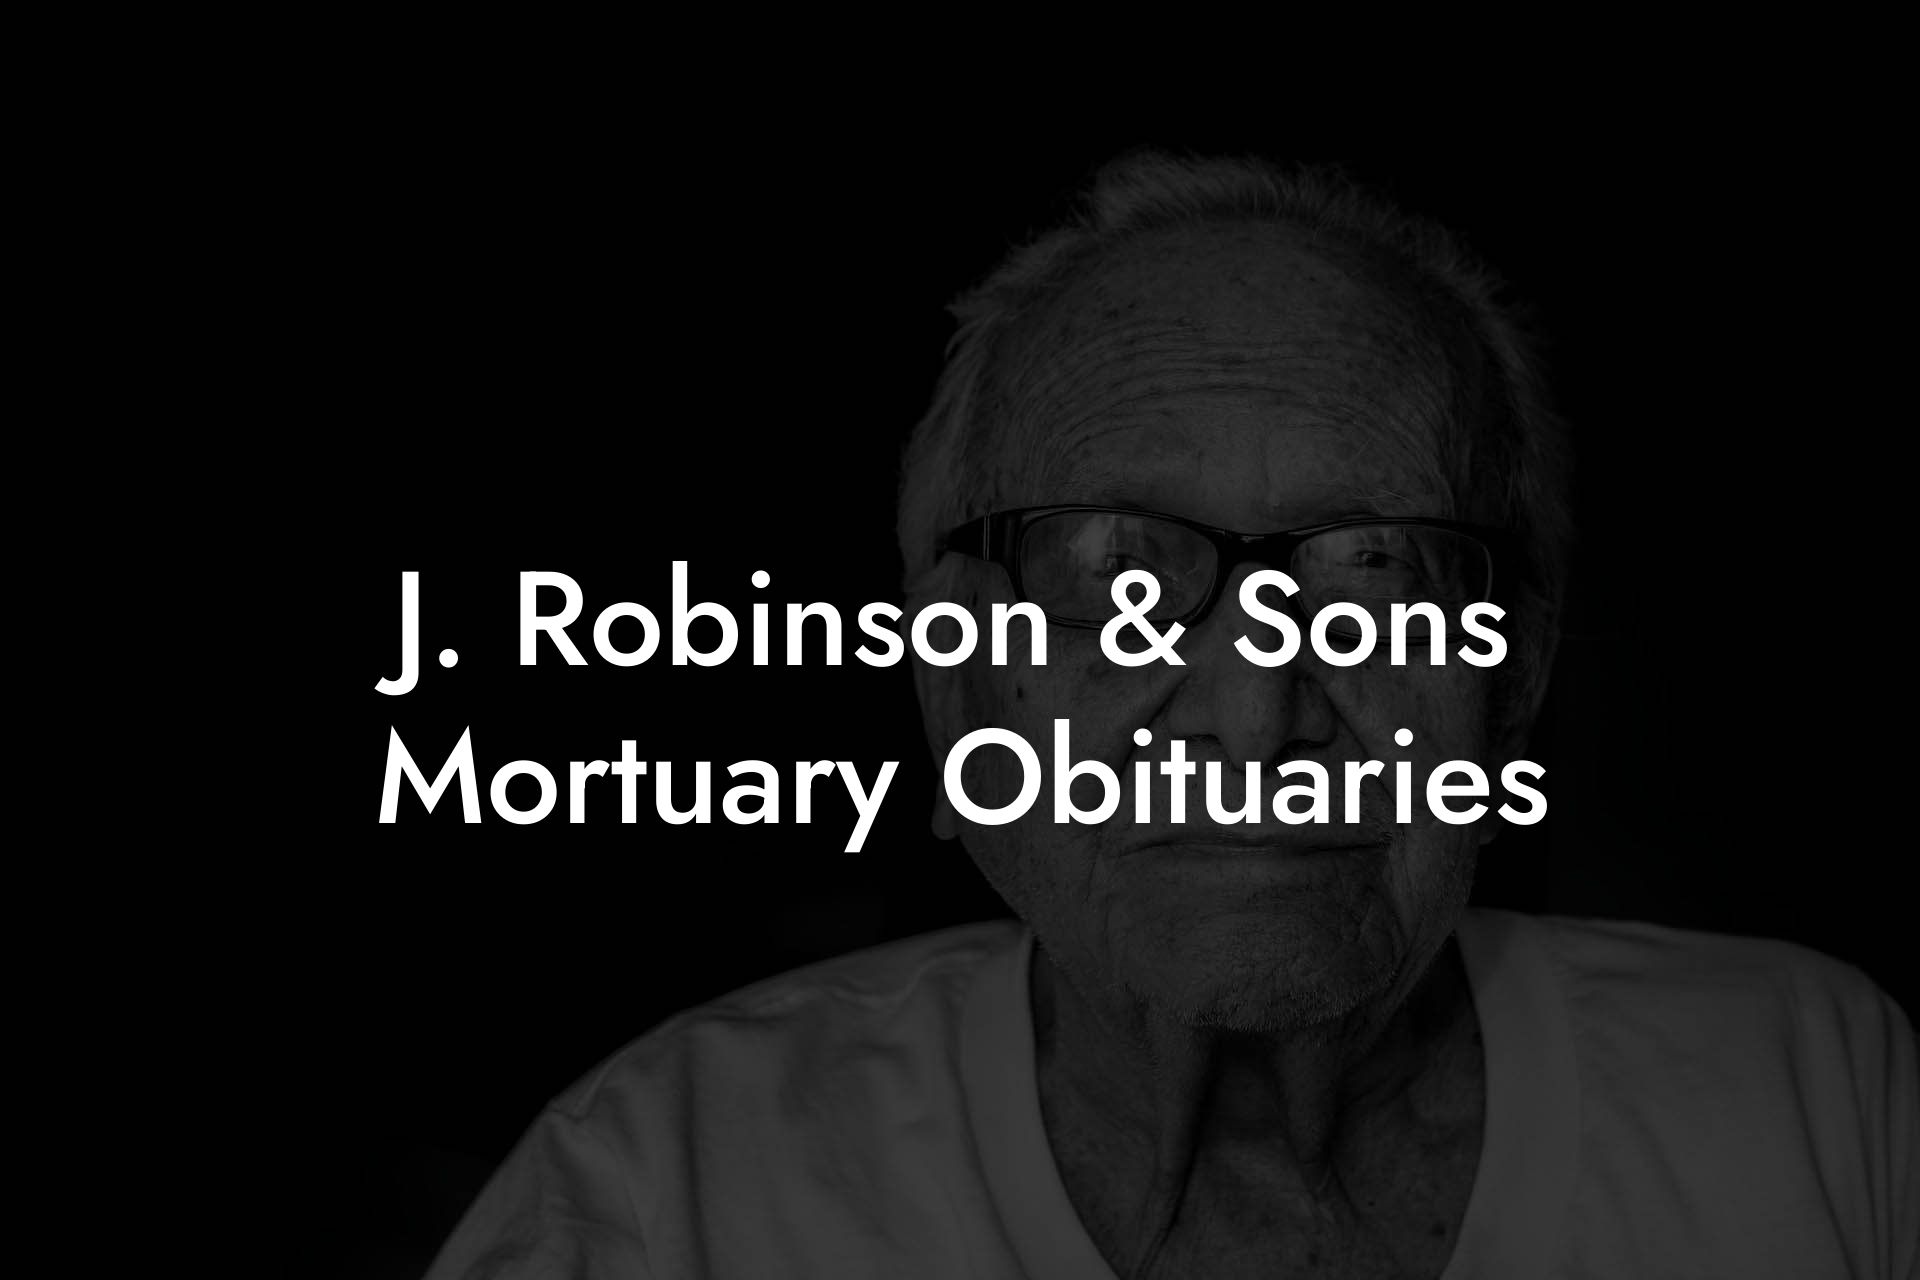 J. Robinson & Sons Mortuary Obituaries